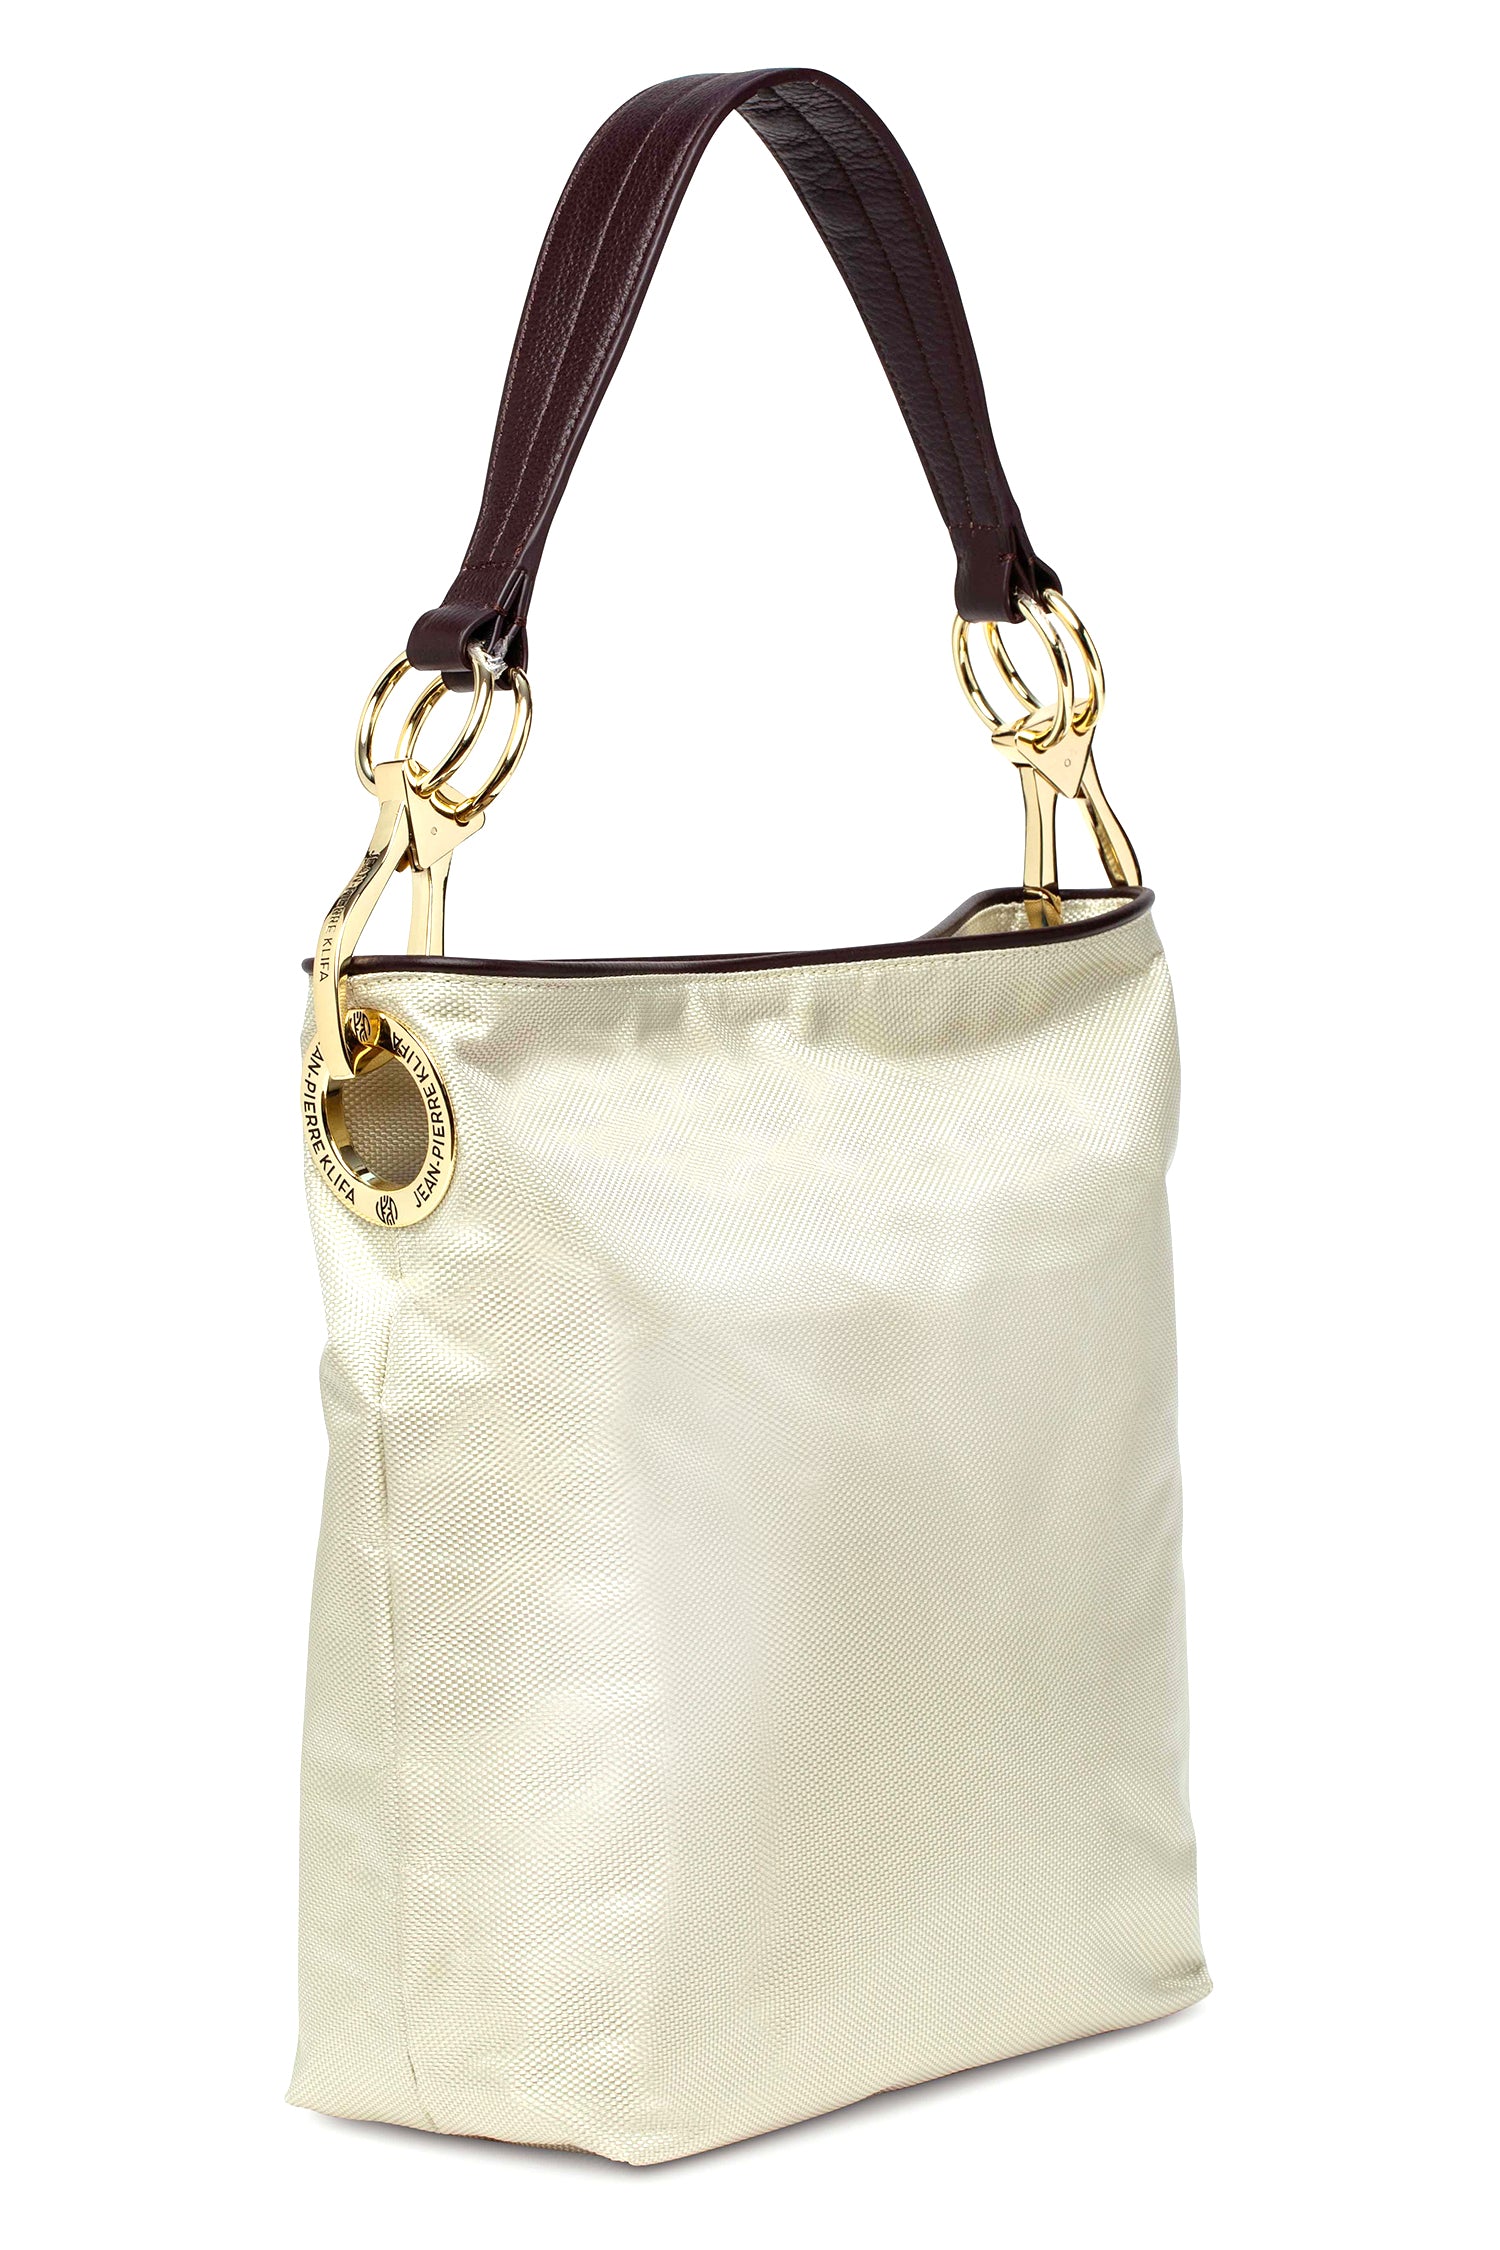 Nylon Bucket Bag Almost White Handbag Jean-Pierre Klifa   